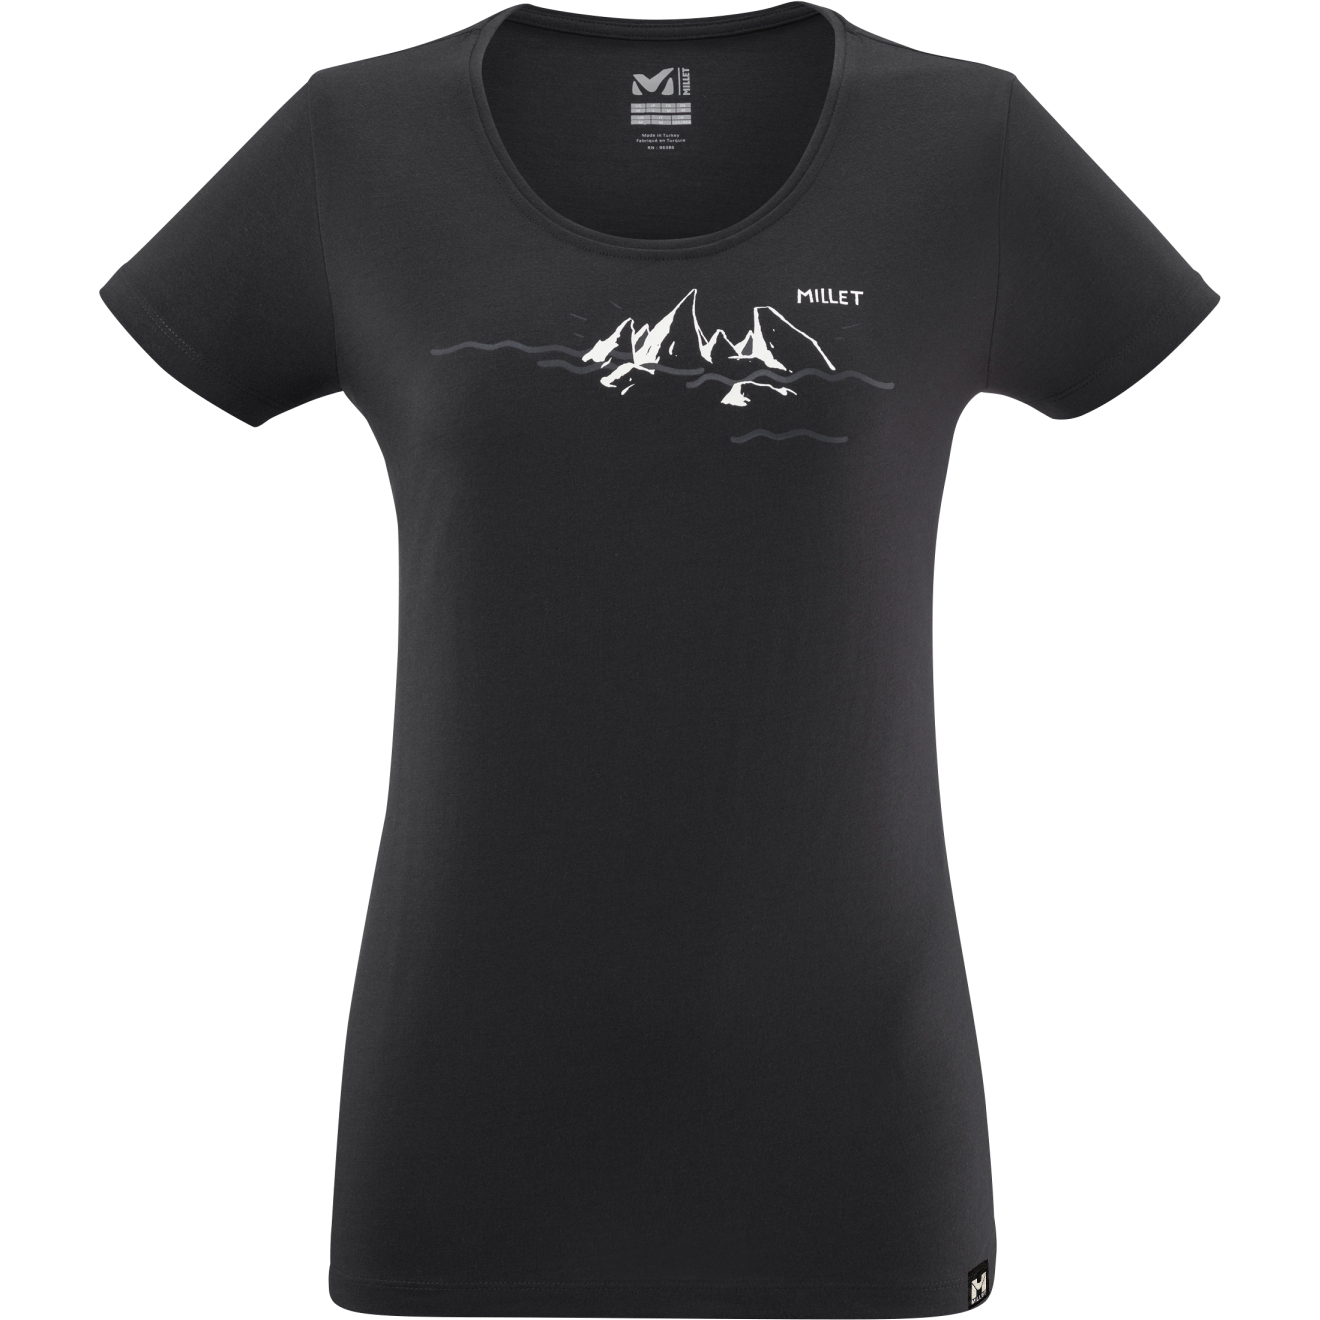 Produktbild von Millet Divino T-Shirt Damen - Schwarz